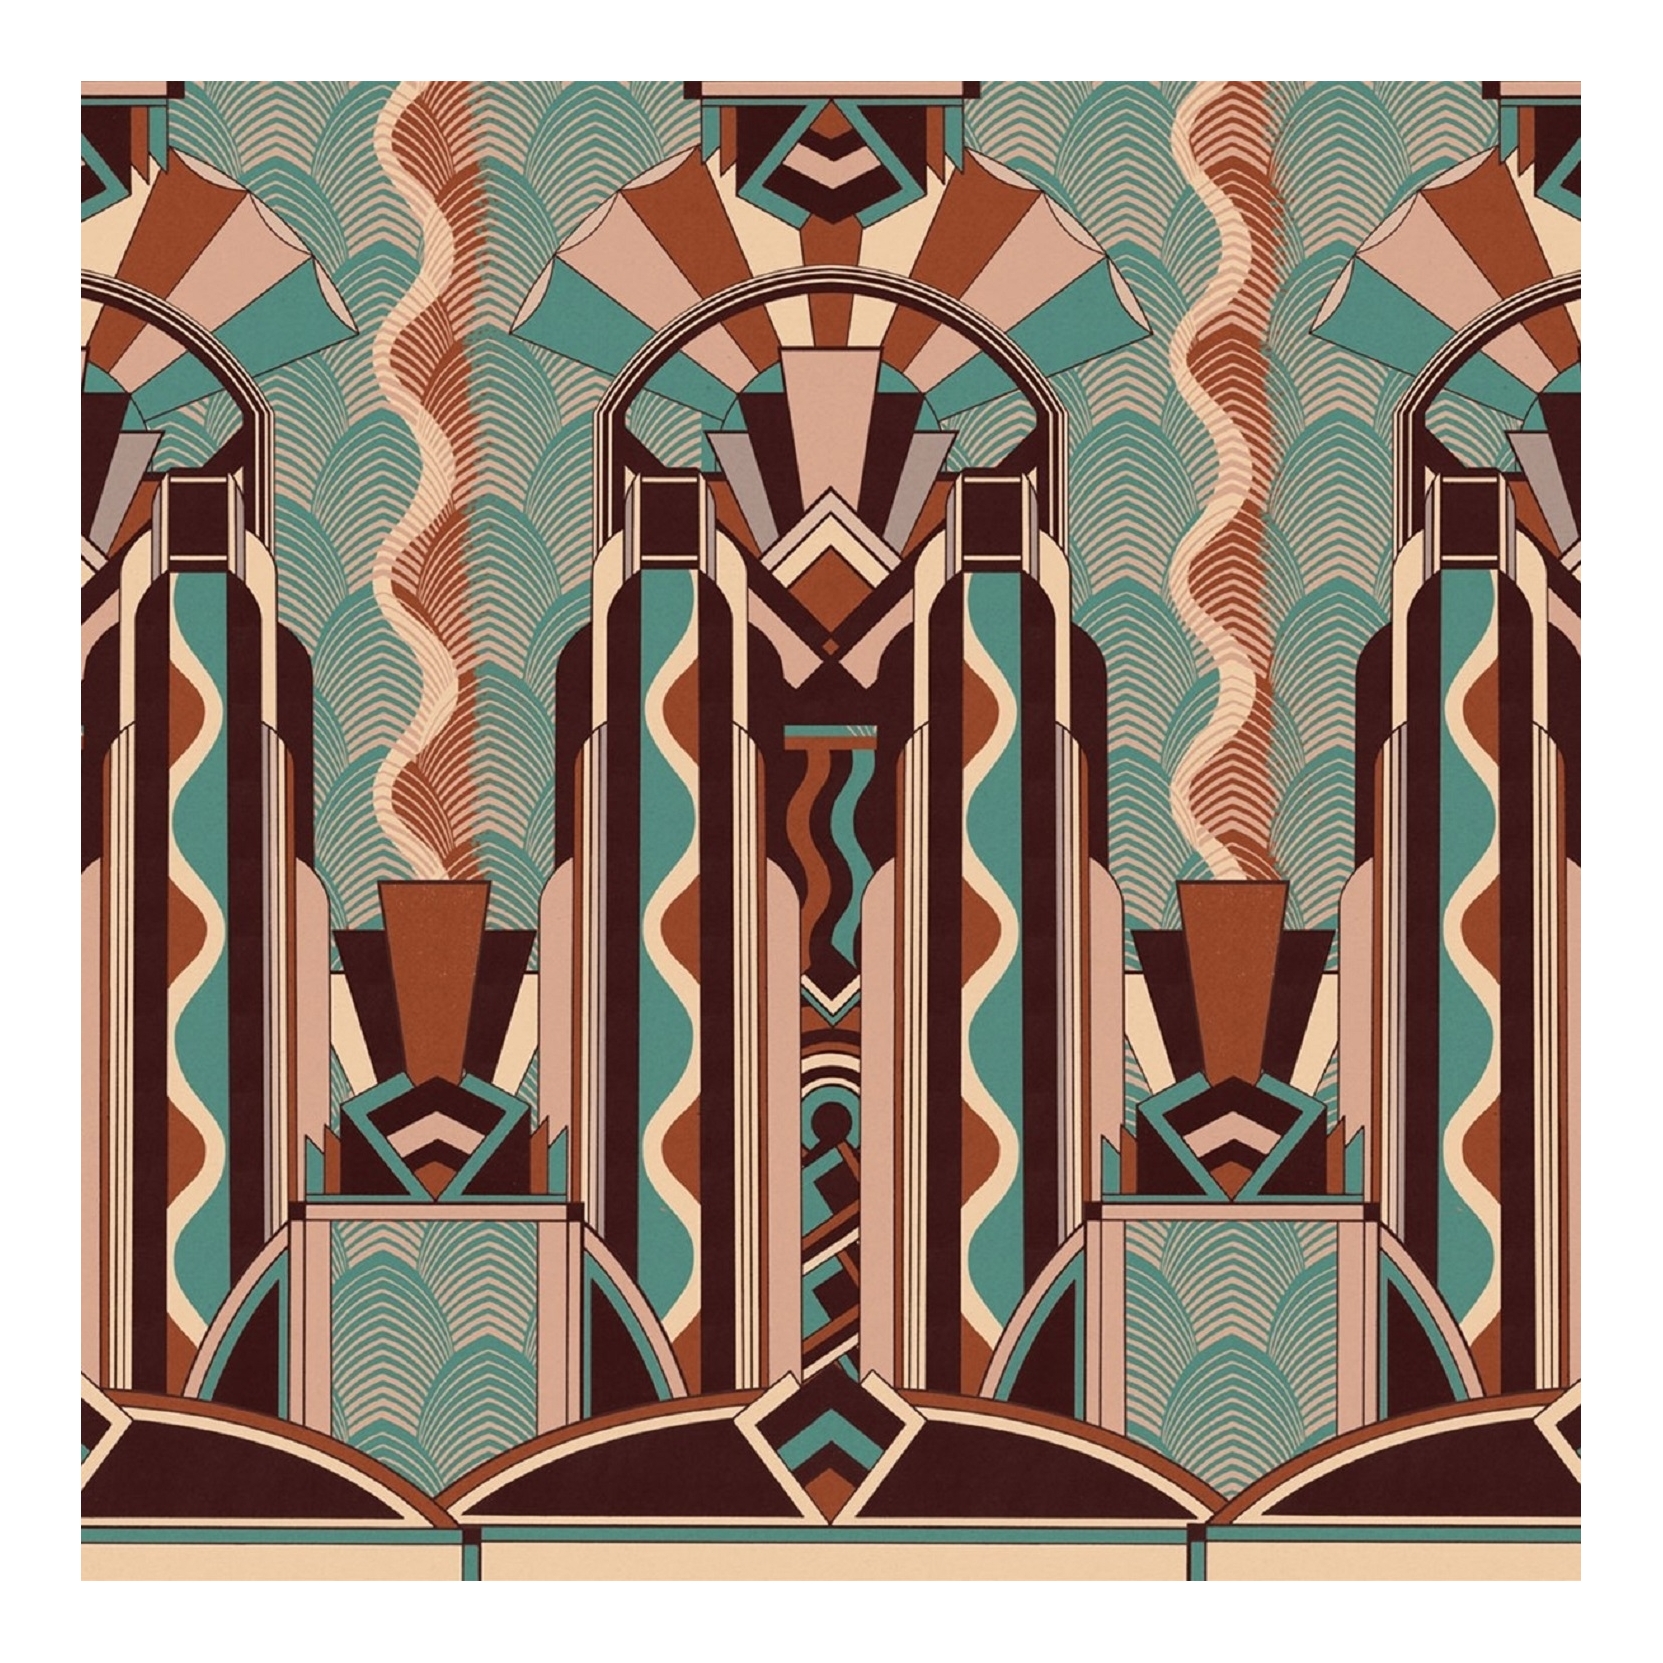 Art Deco Wallpapers